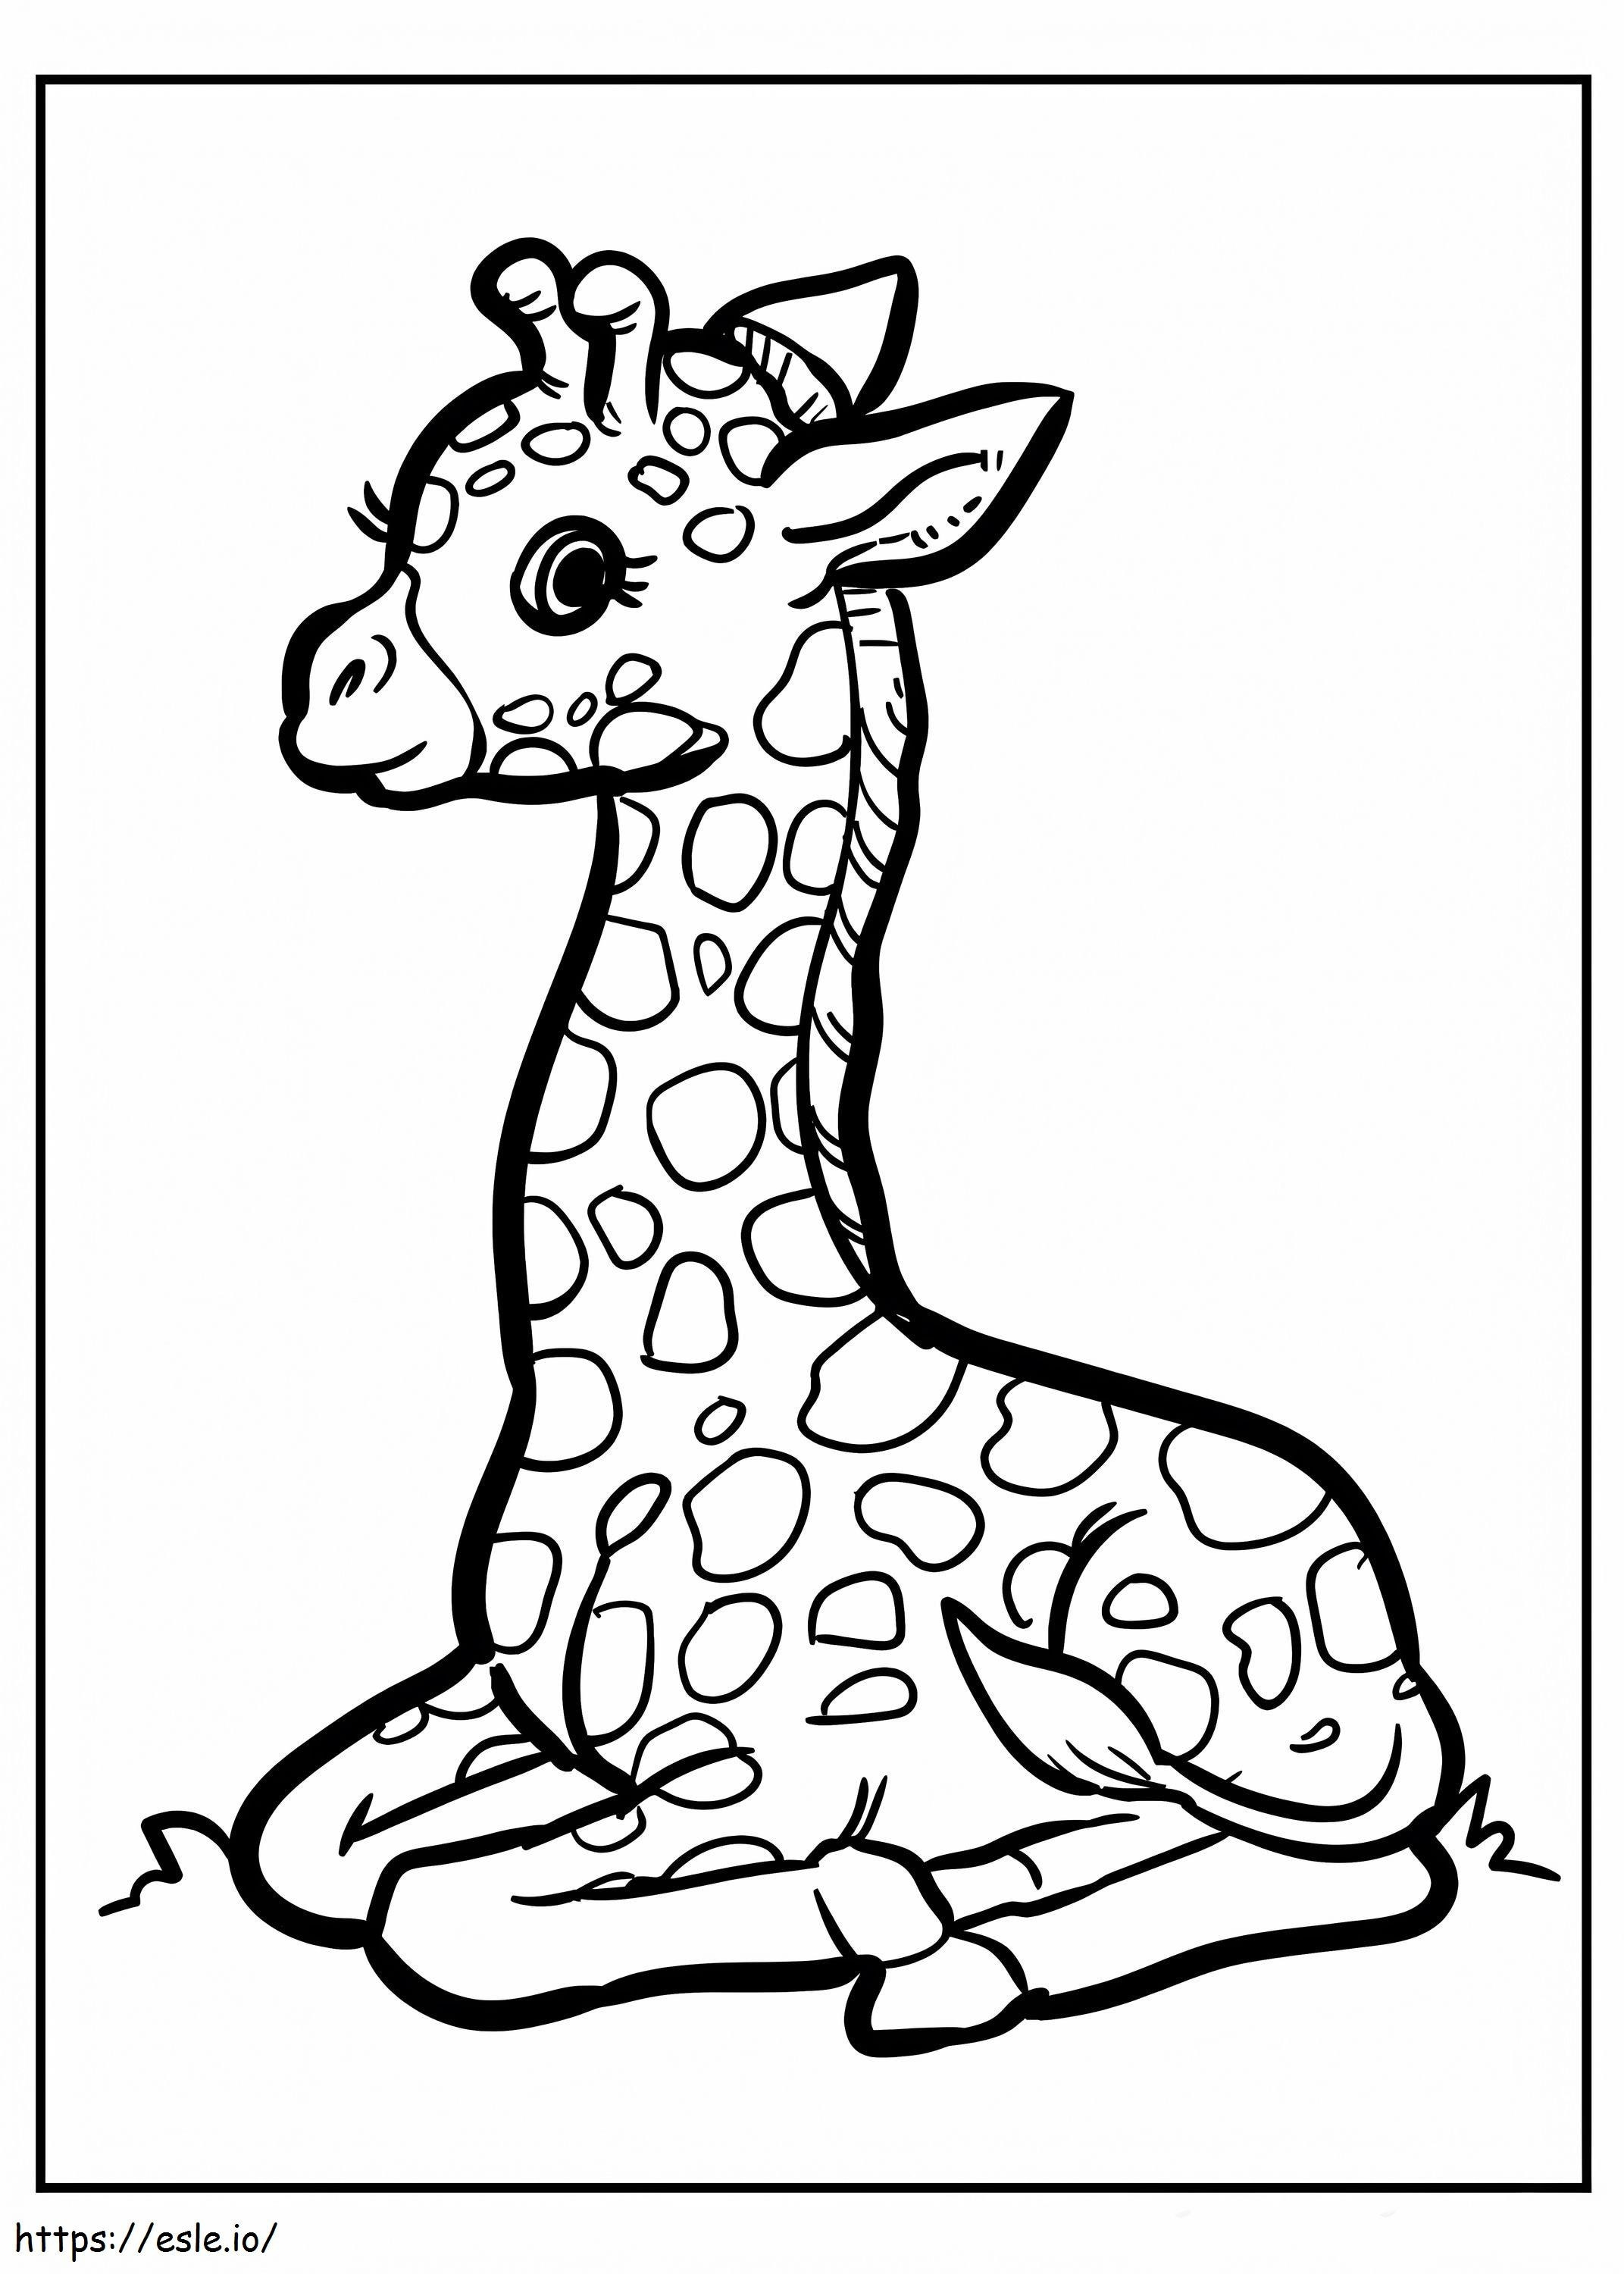 Seduta della giraffa del bambino da colorare